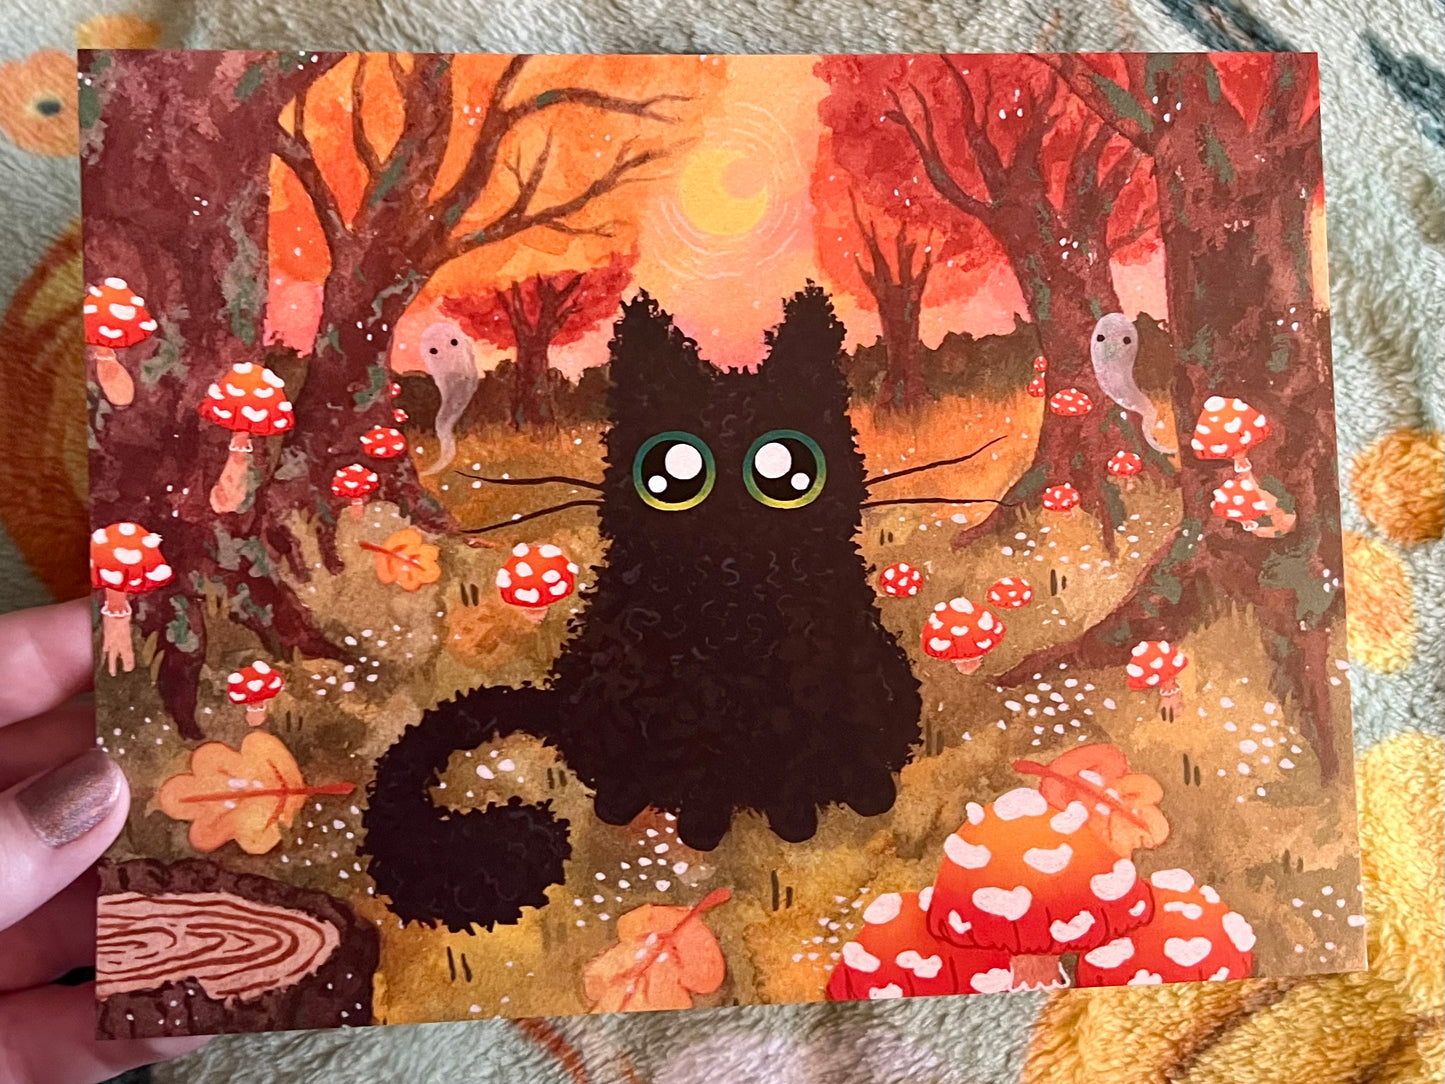 Autumn Kitty Print